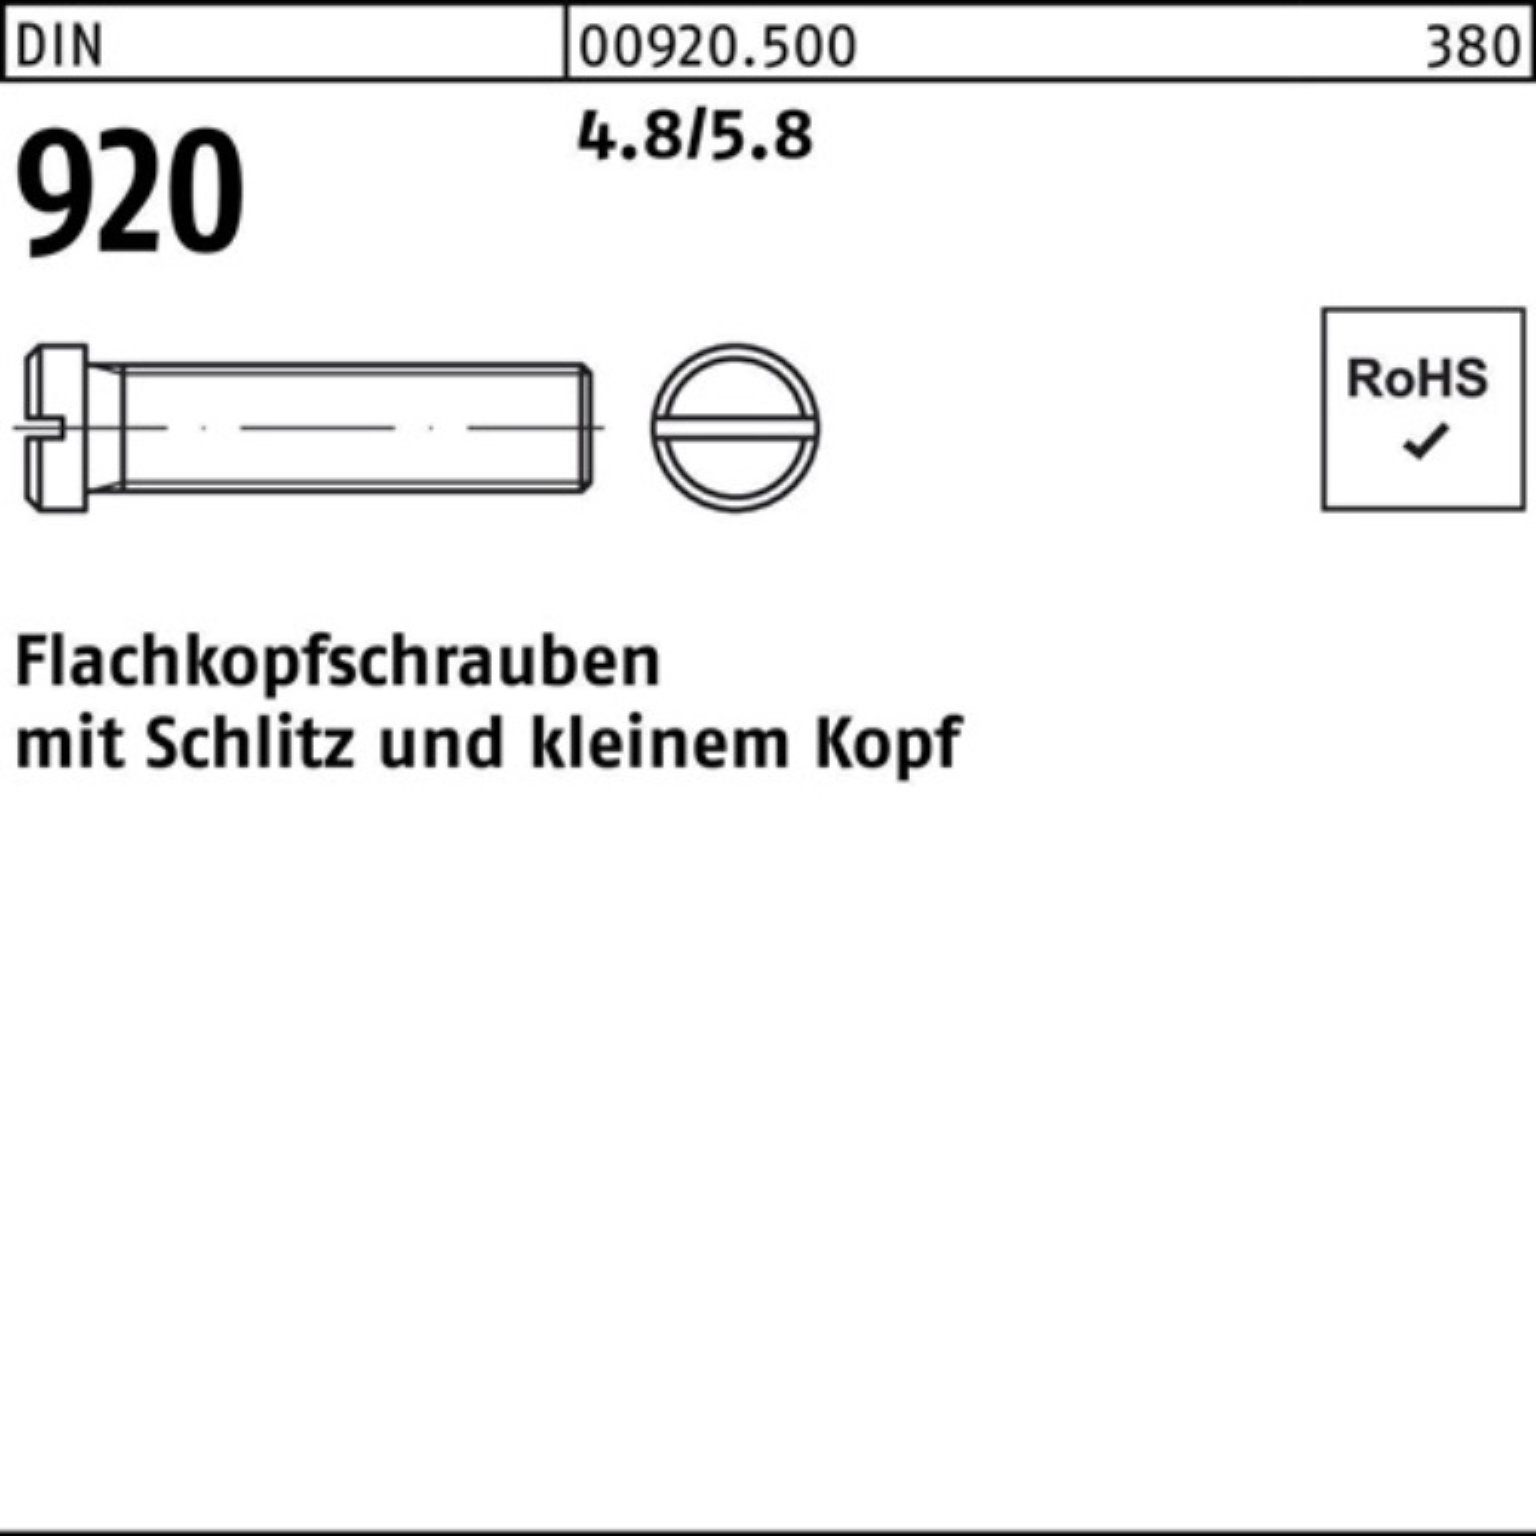 Reyher Schraube 100er Pack Flachkopfschraube DIN 920 Schlitz M3x 4 4.8/5.8 100 Stück